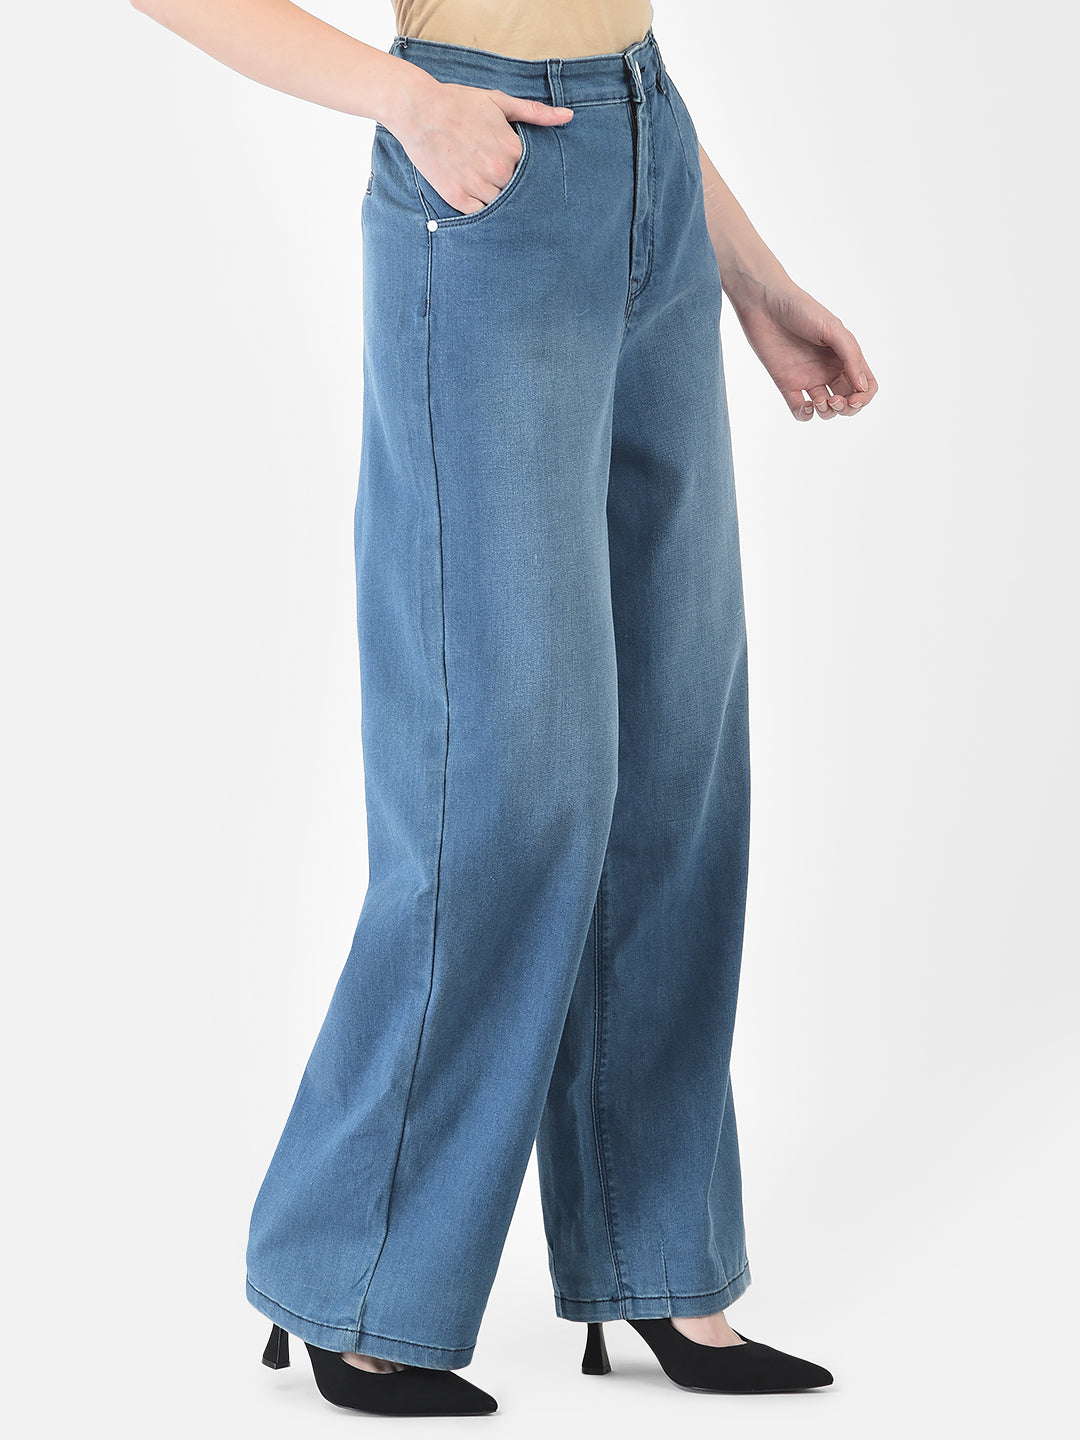 Blue Wide Leg Jeans - Women Jeans